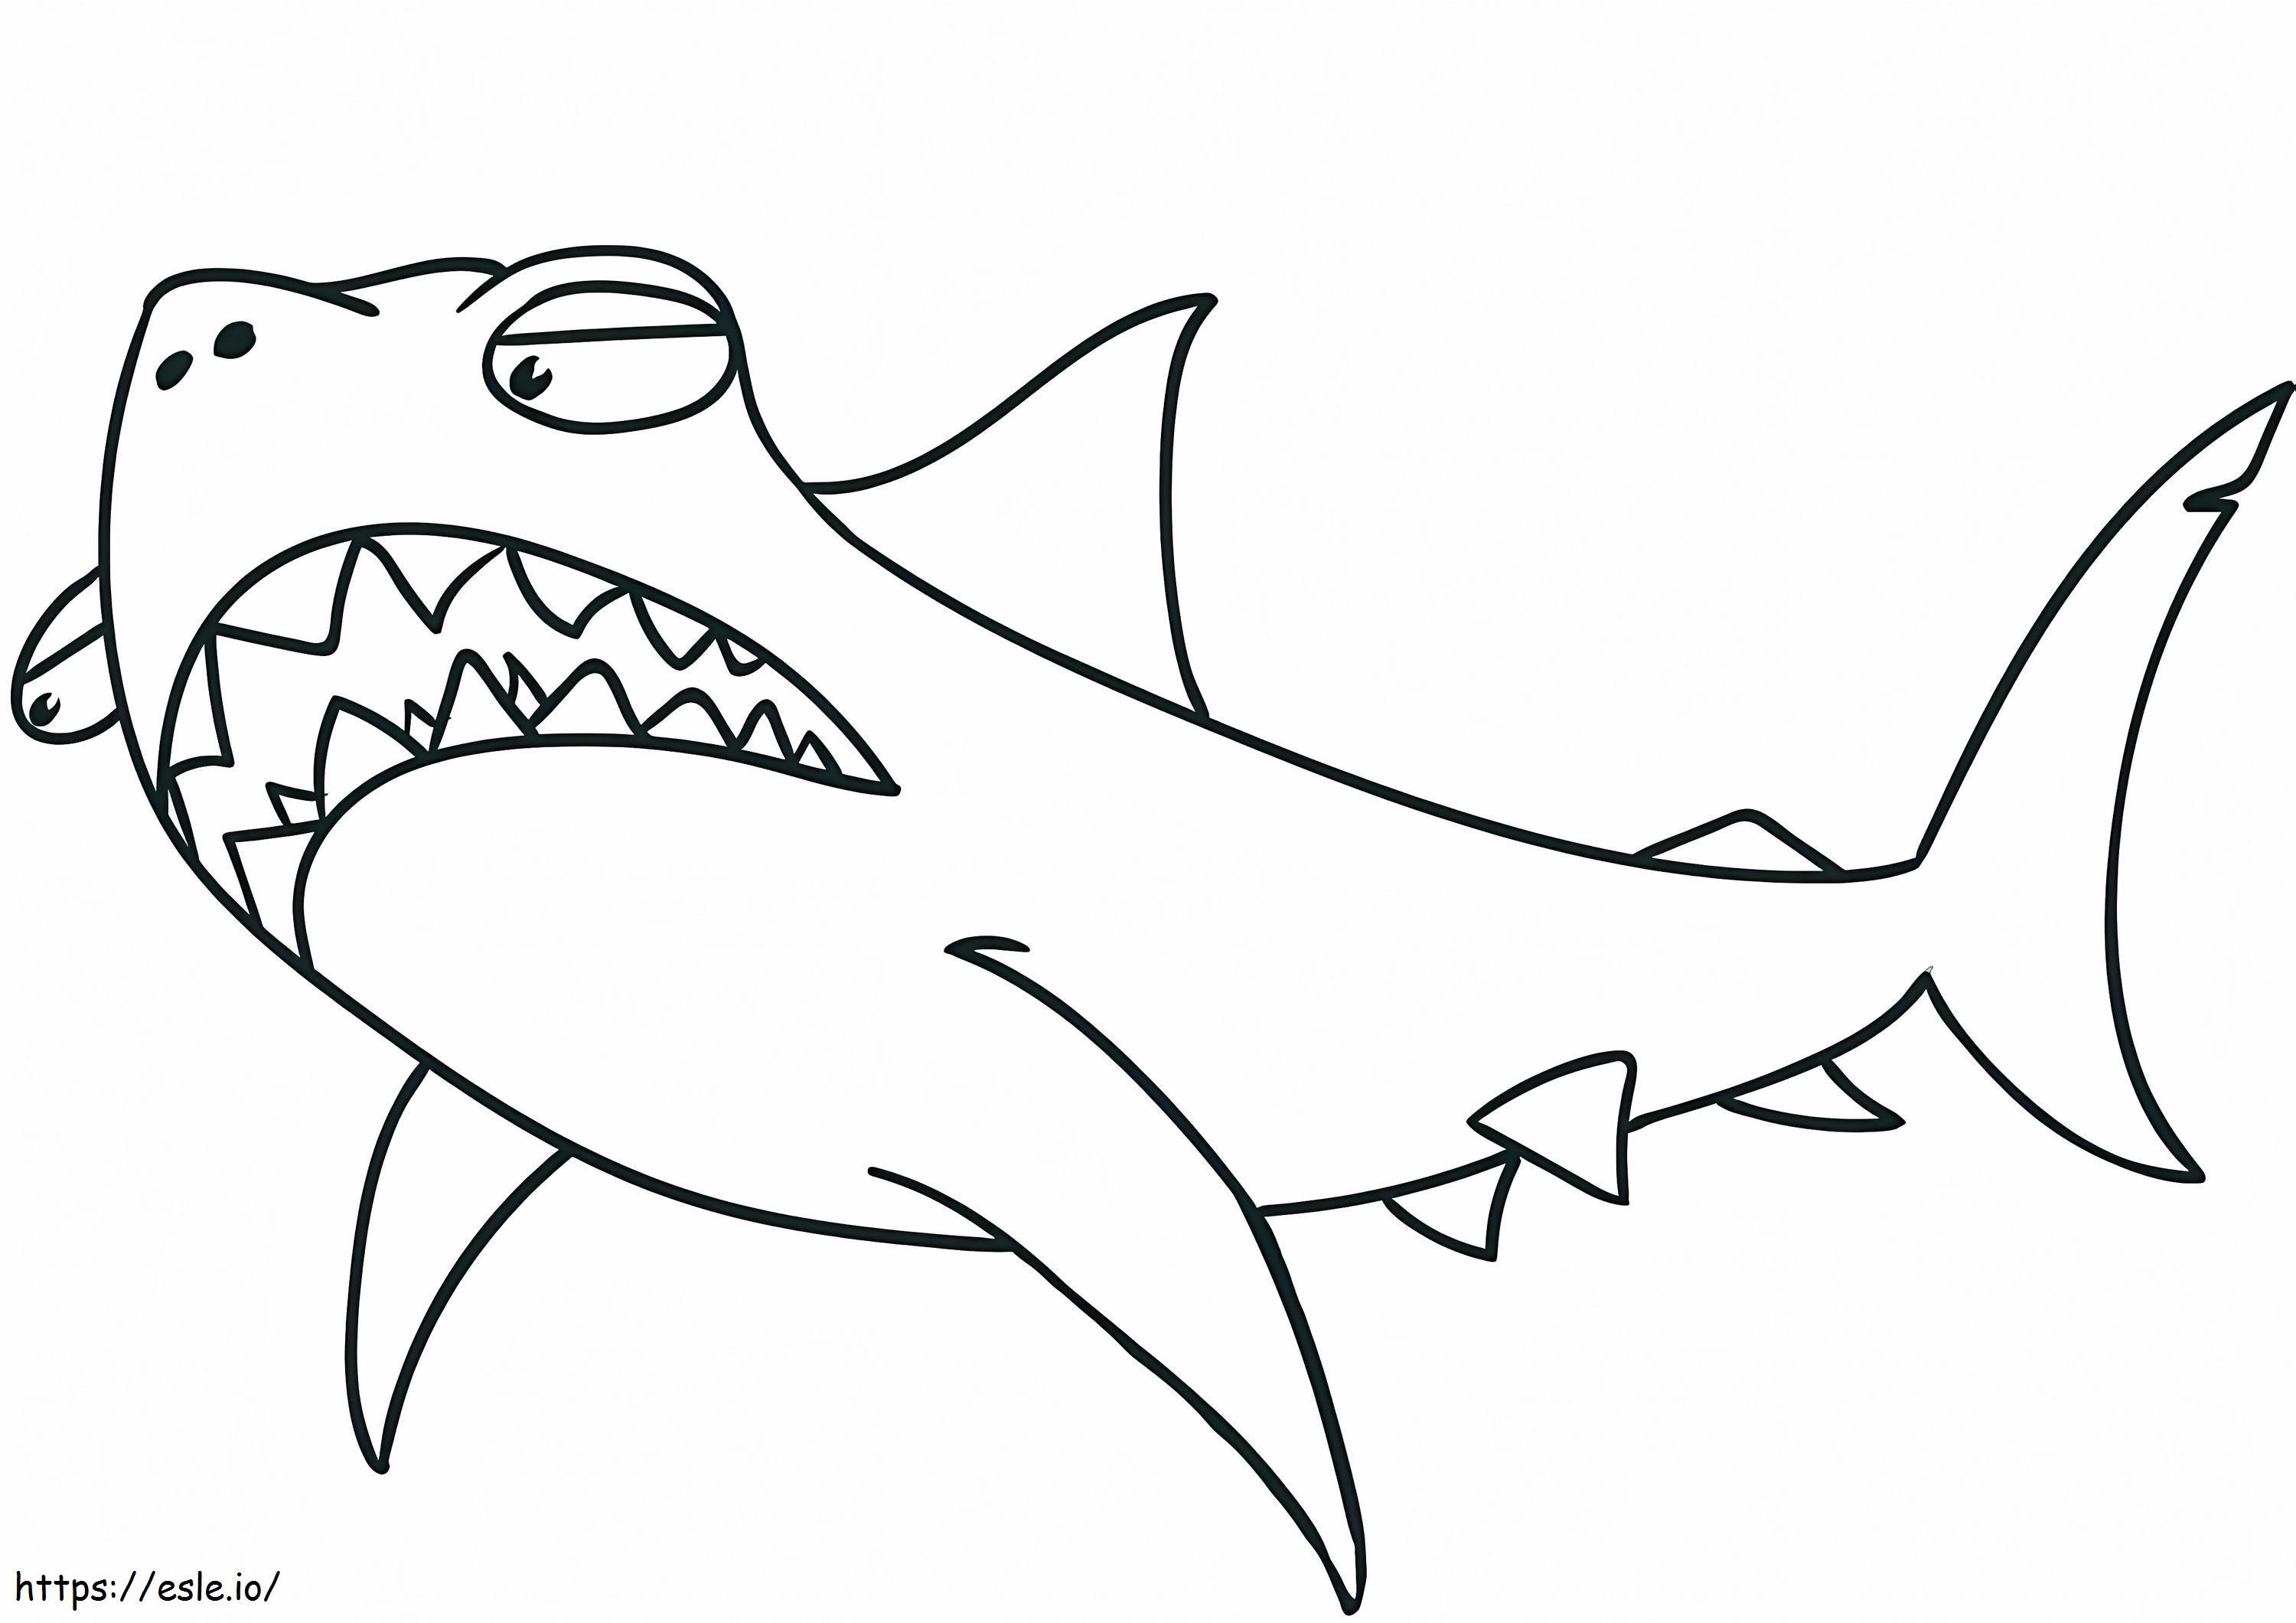 Karikatür komik köpekbalığı boyama